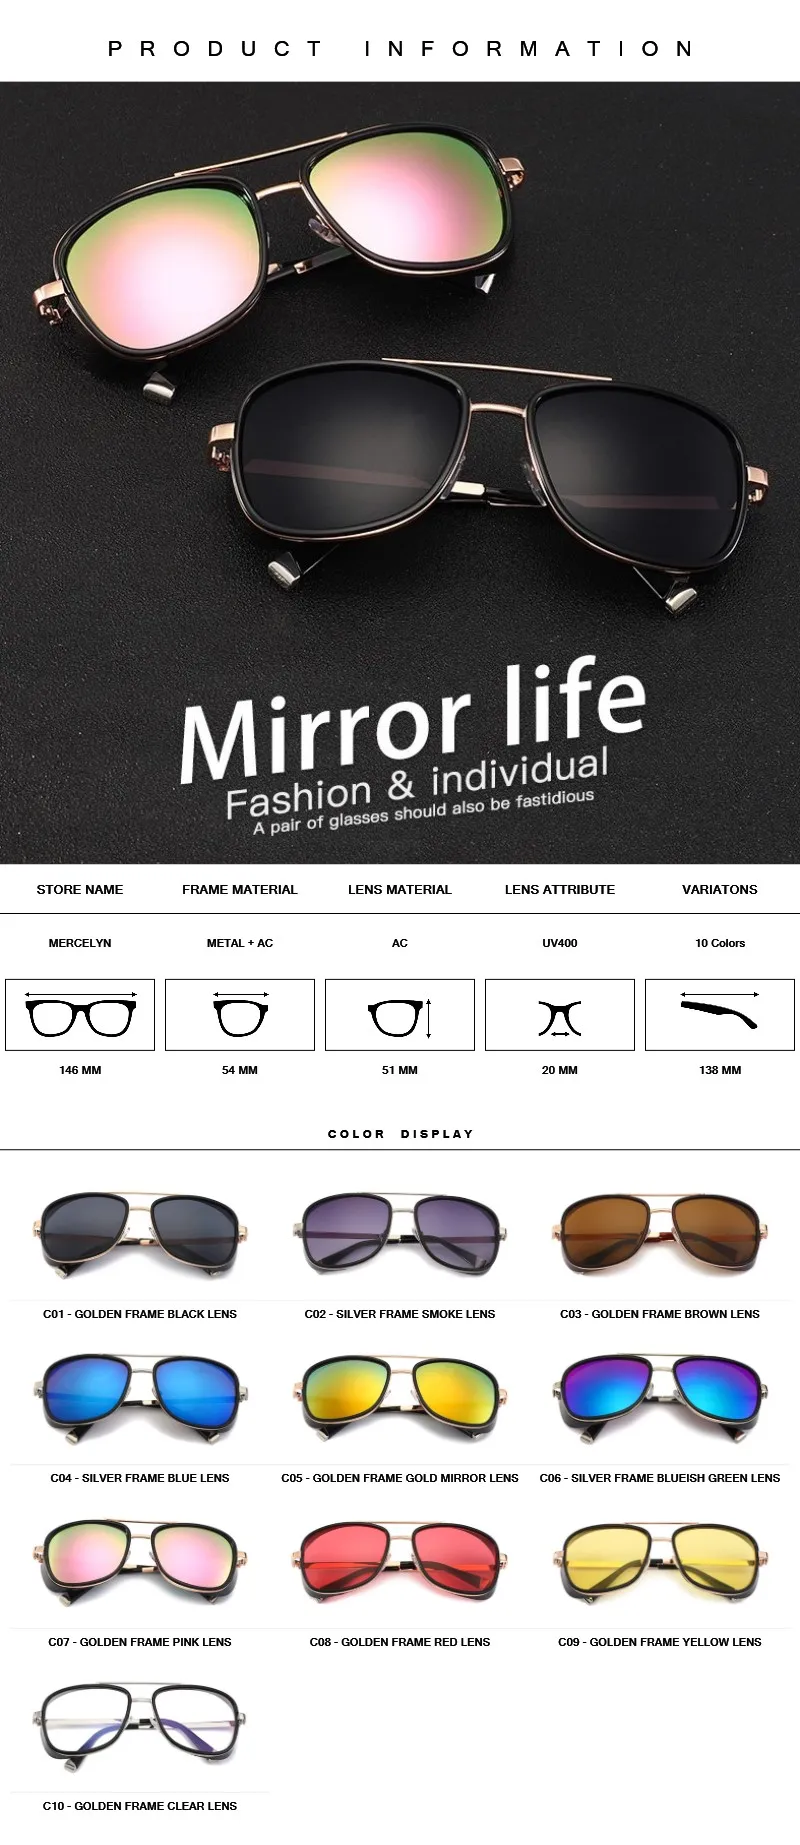 Классические винтажные стимпанк Солнцезащитные очки для мужчин и женщин Роскошные Панк знаменитостей дизайнерские солнцезащитные очки